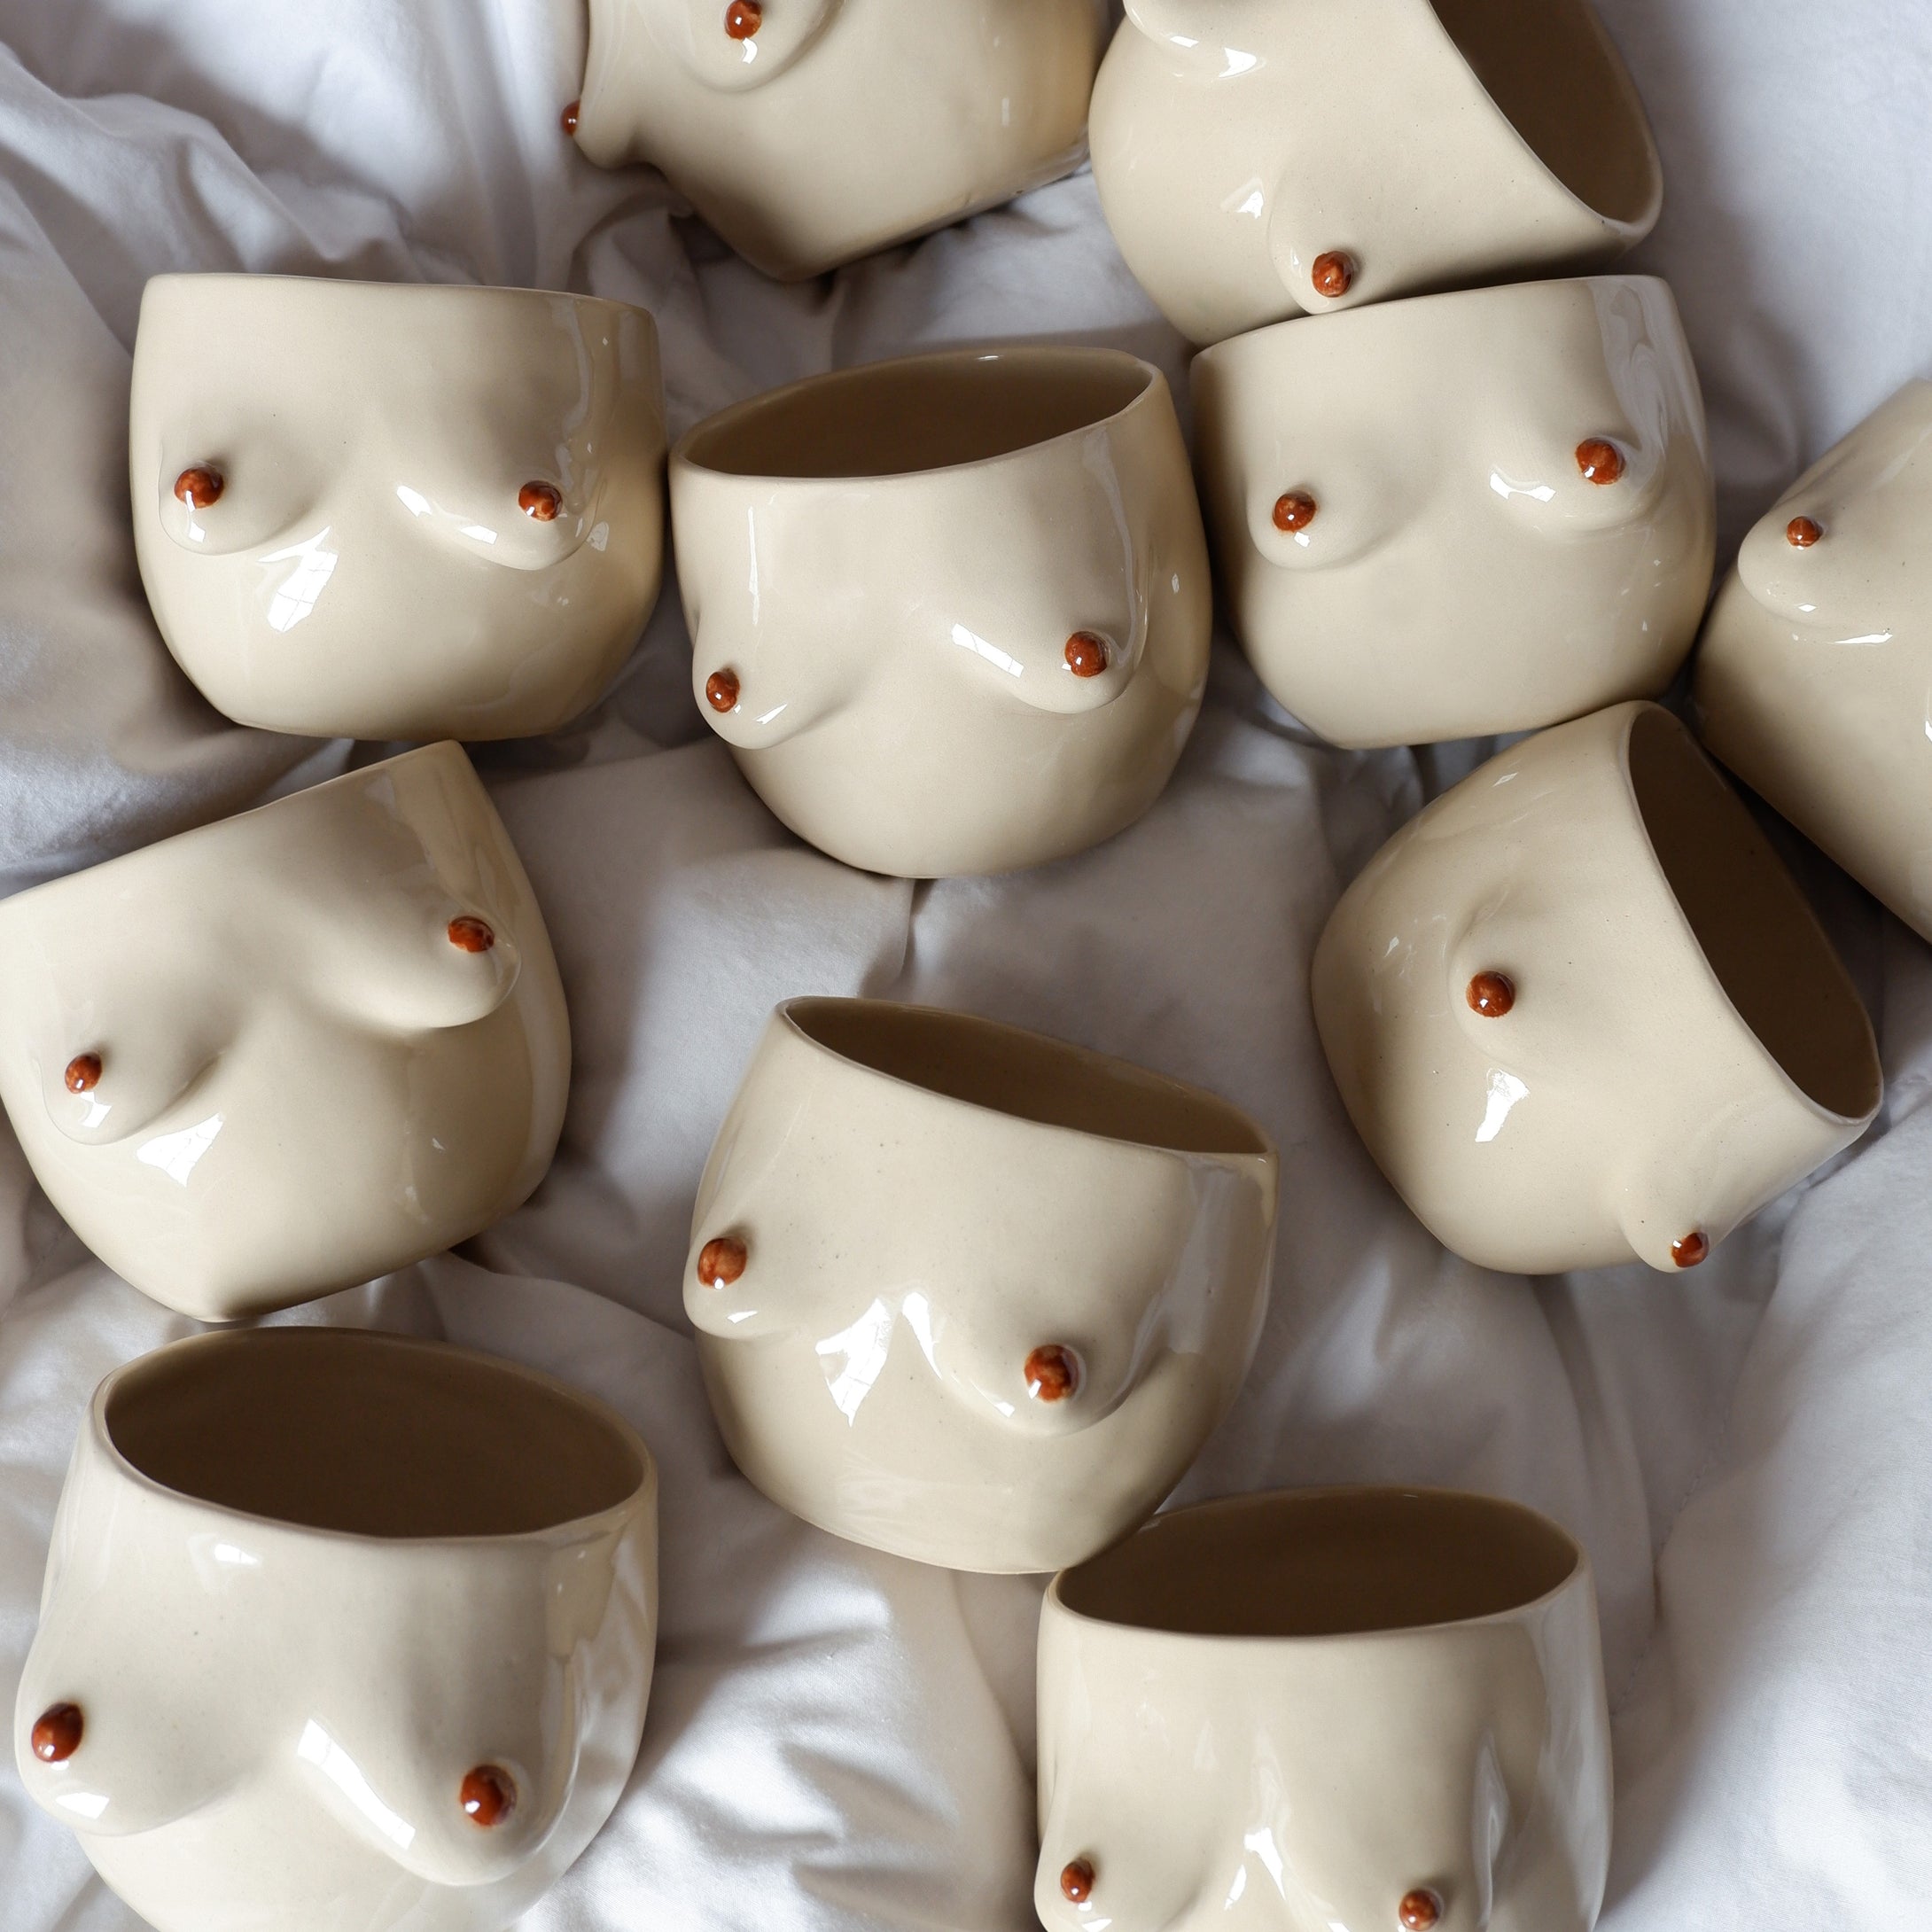 The Surprise Mug / Beige mug with brown details